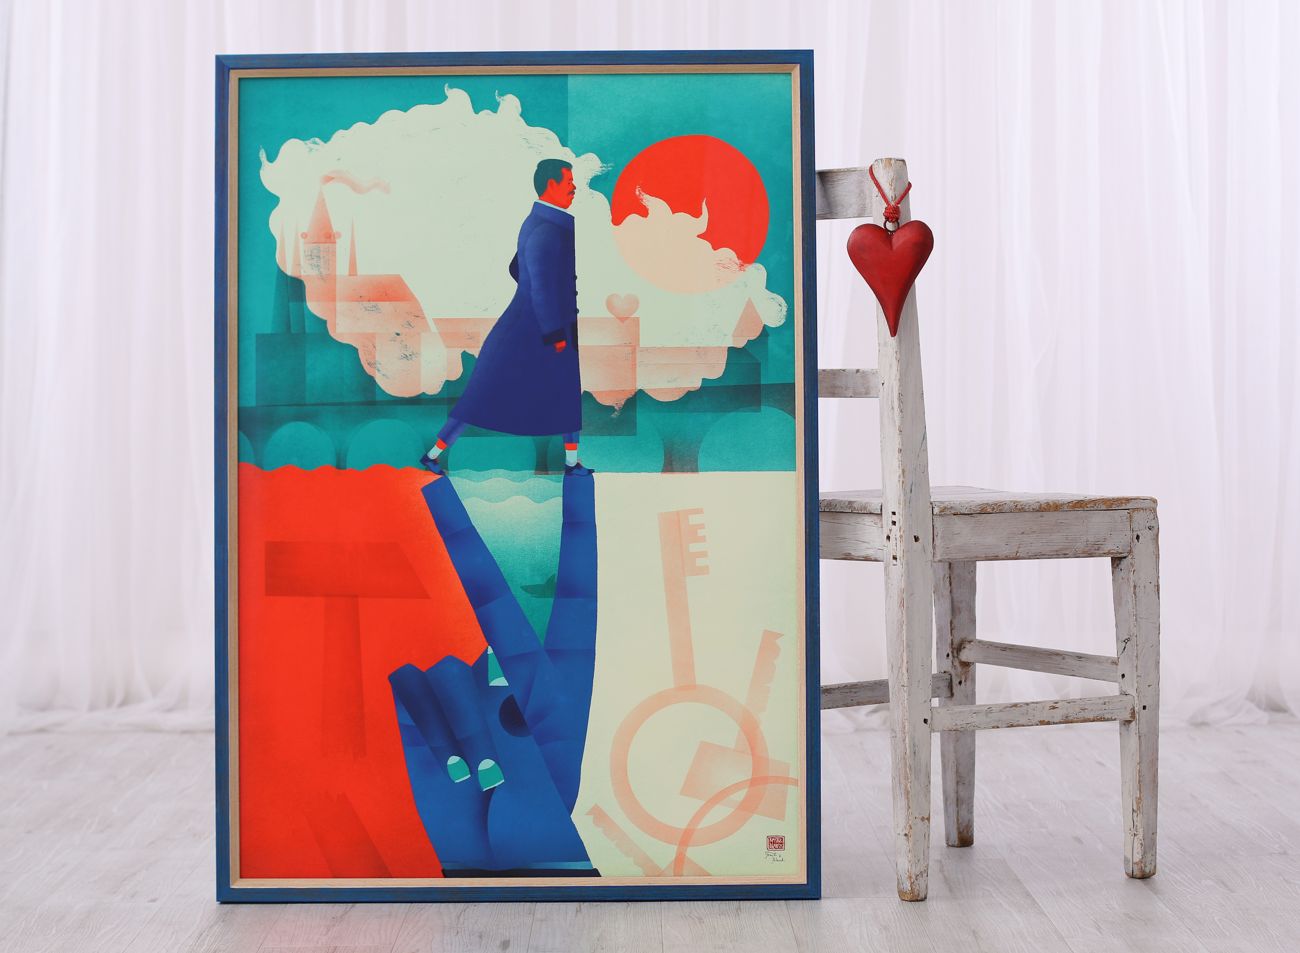 Hravé rámování plakátu Havel od Tomski&Polanski do modrého rámu bez pasparty a s muzeálním sklem | © Frame-it.cz